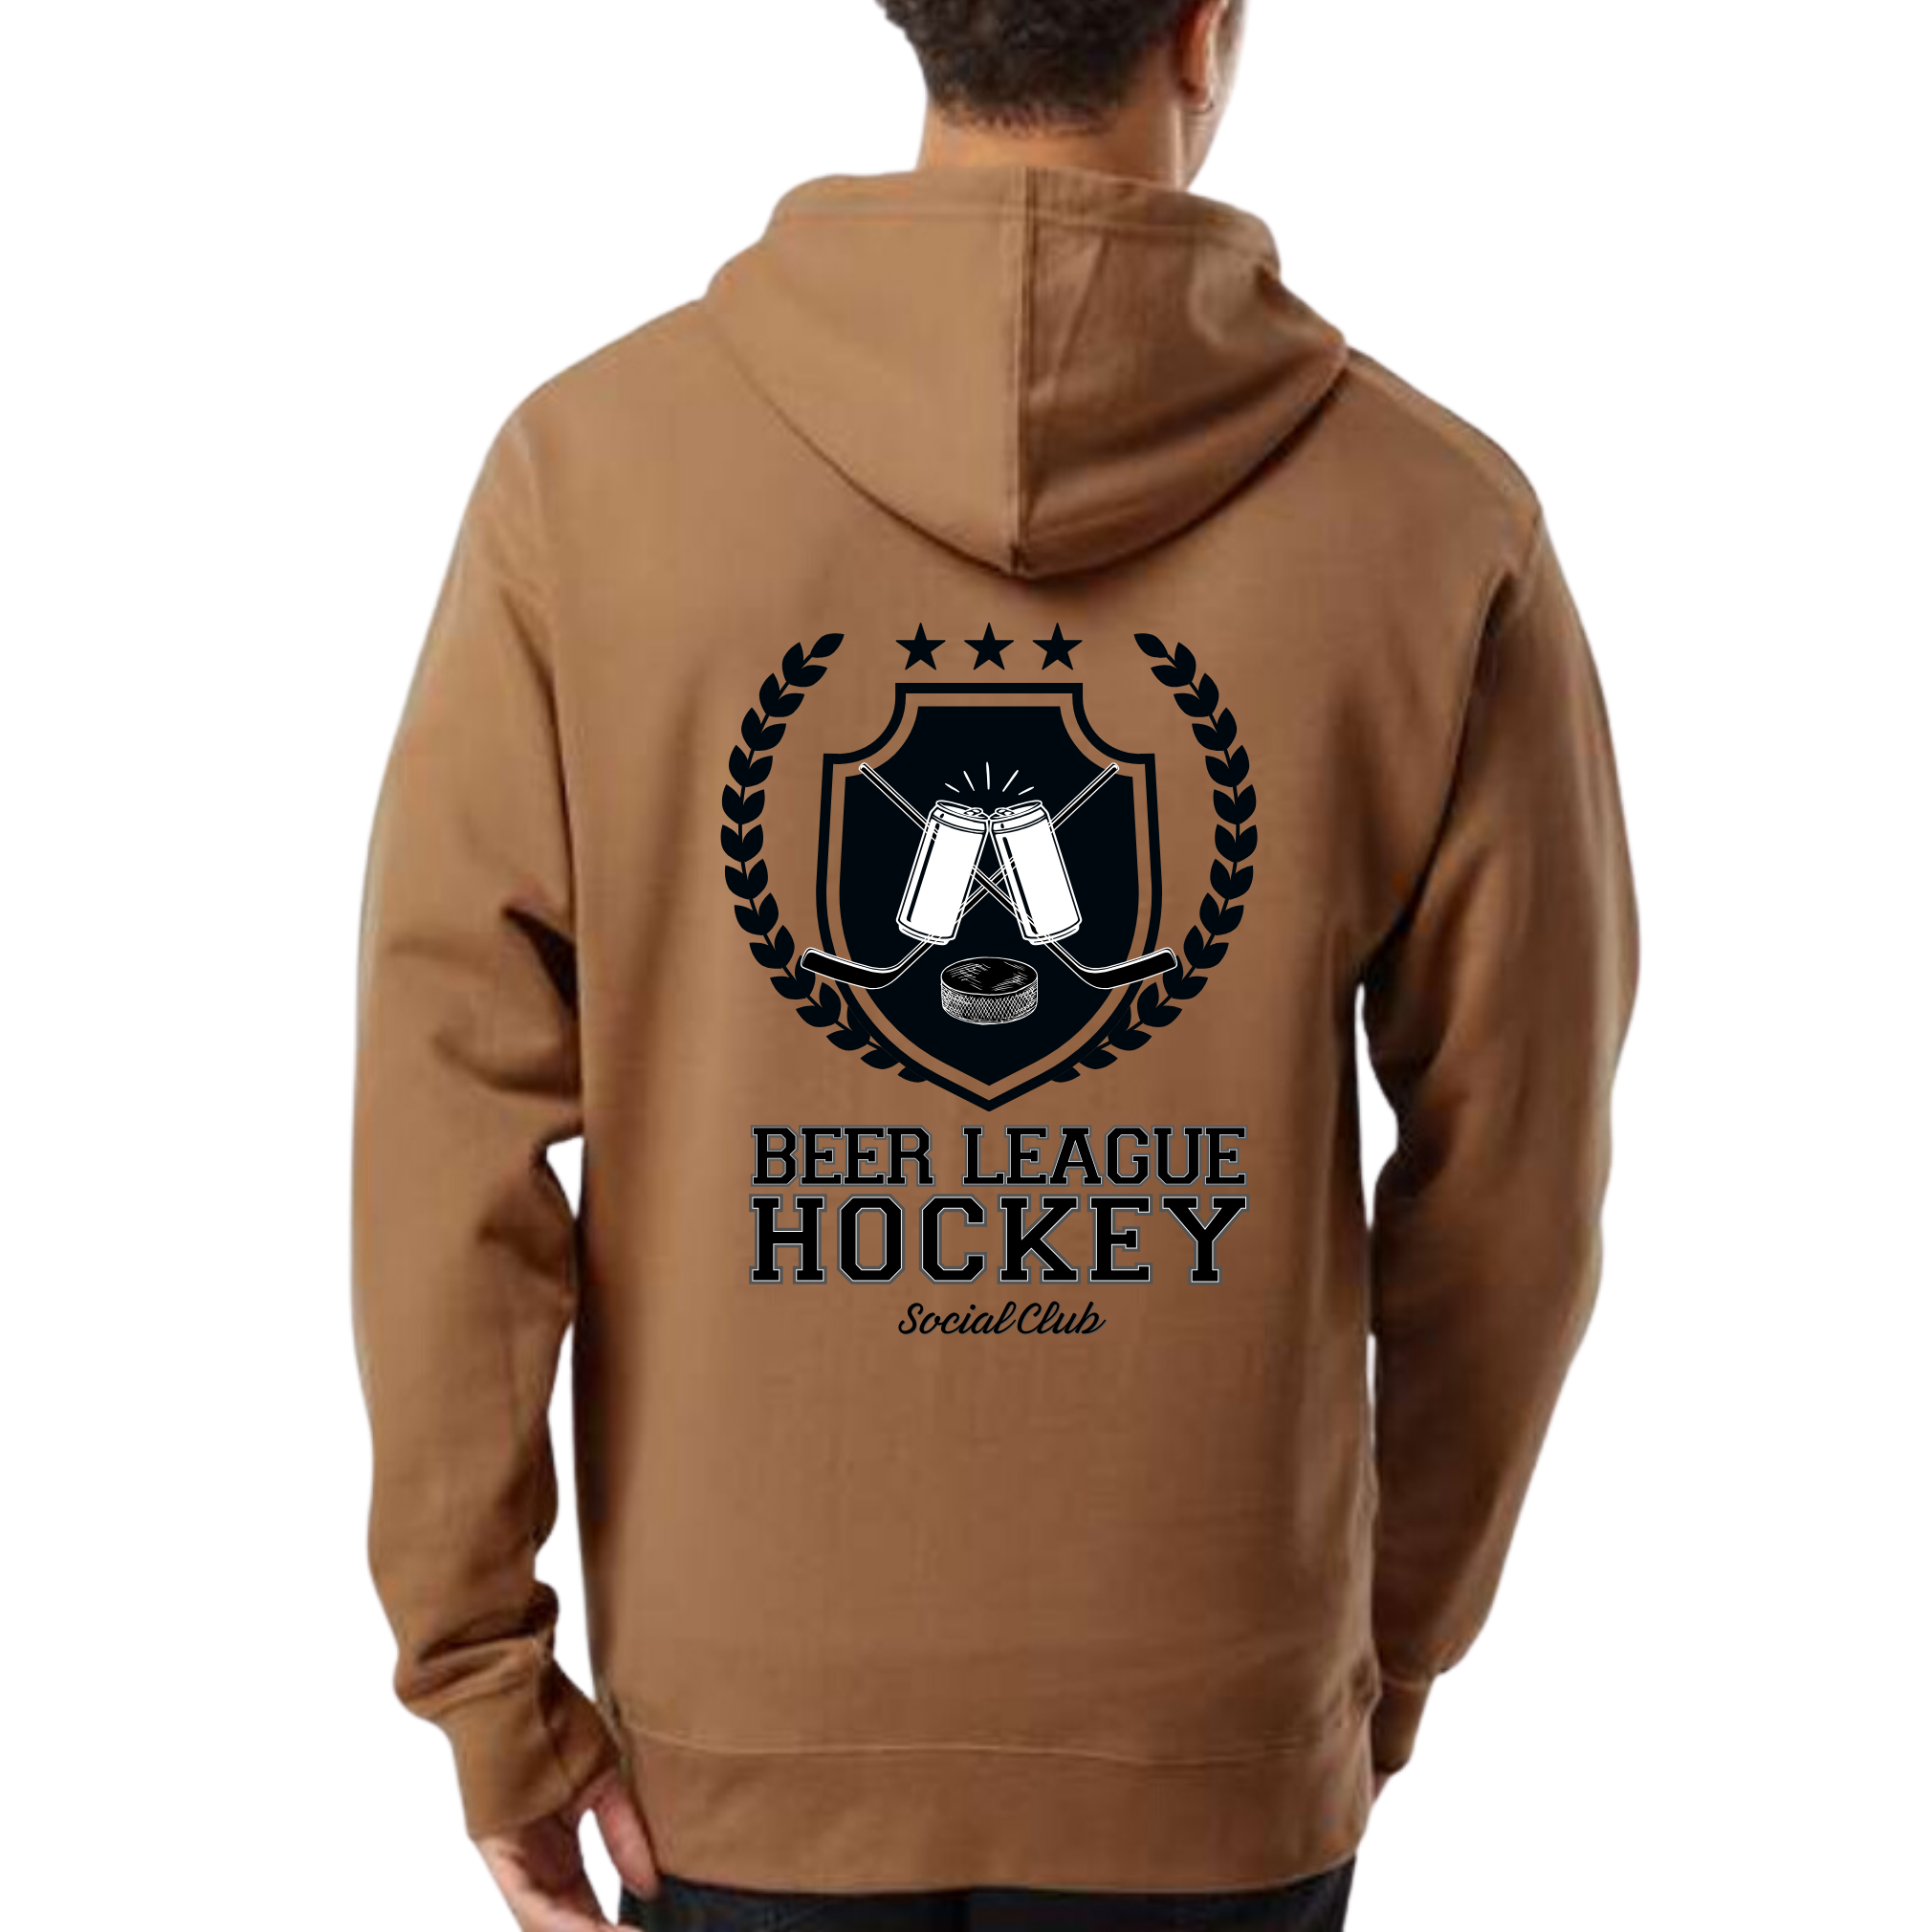 Beer League Hockey Social Club Hoodie